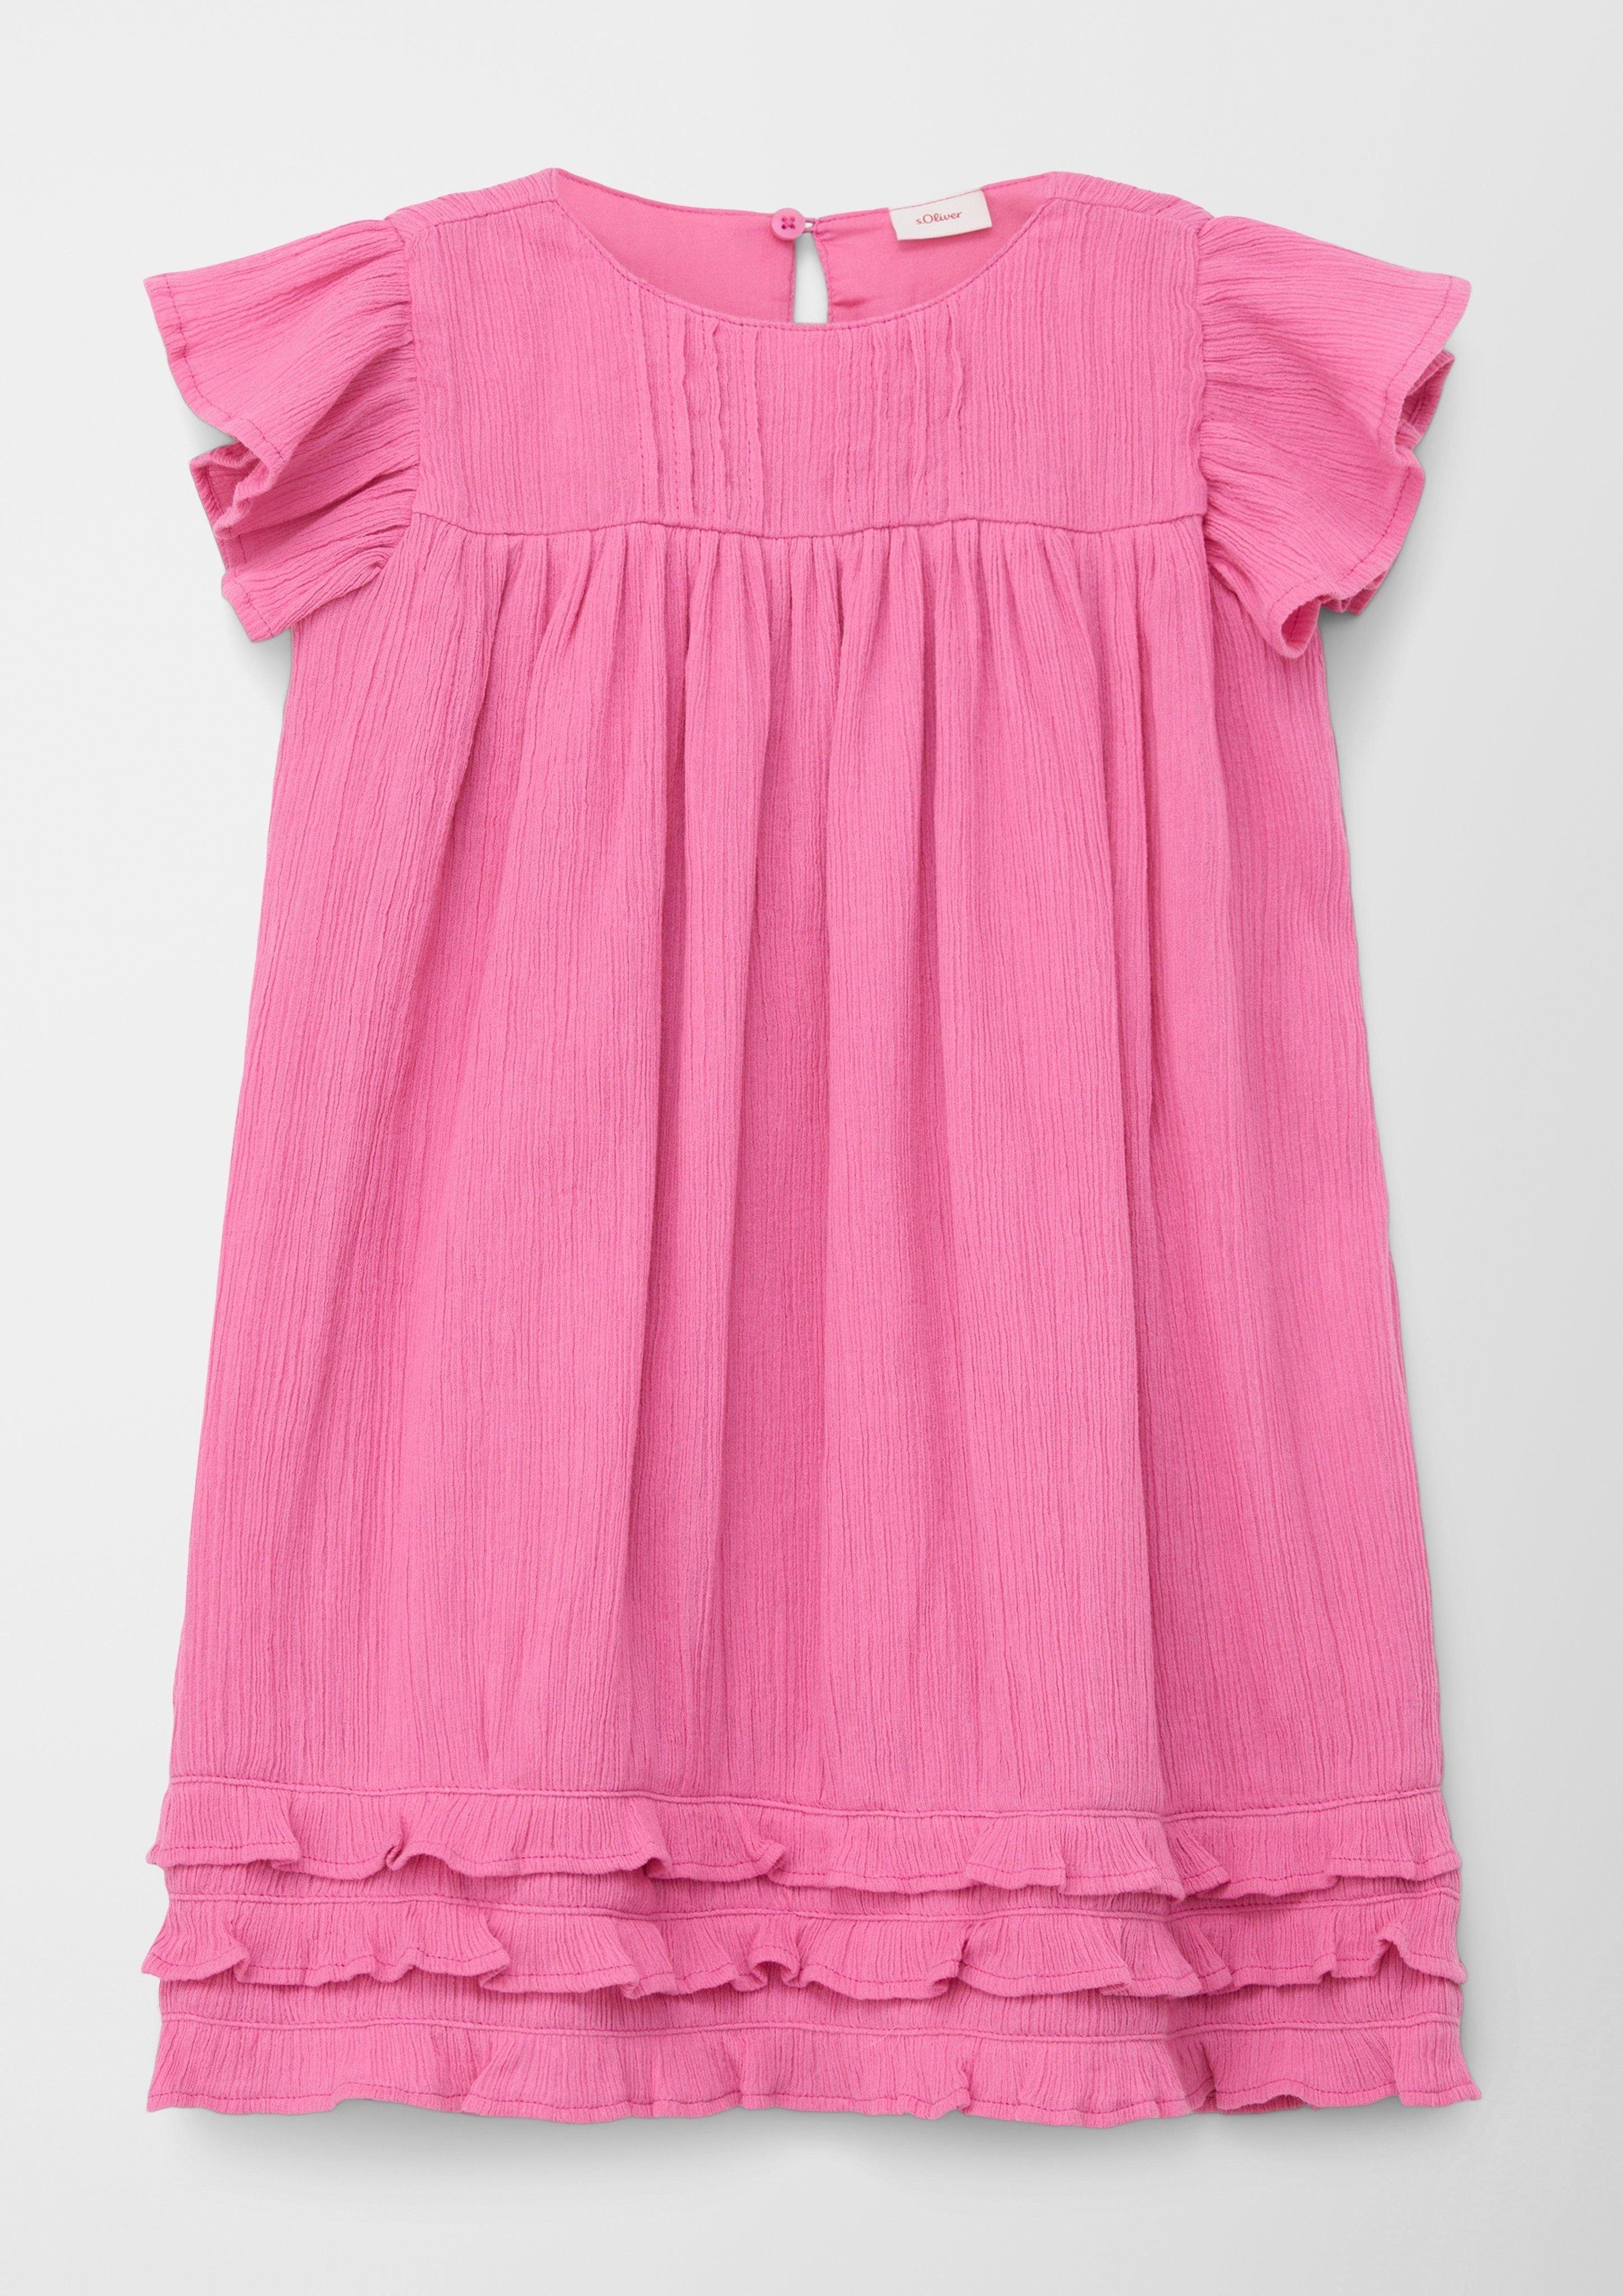 s.Oliver Minikleid A-Linien Kleid mit Rüschen Rüschen, Volants pink